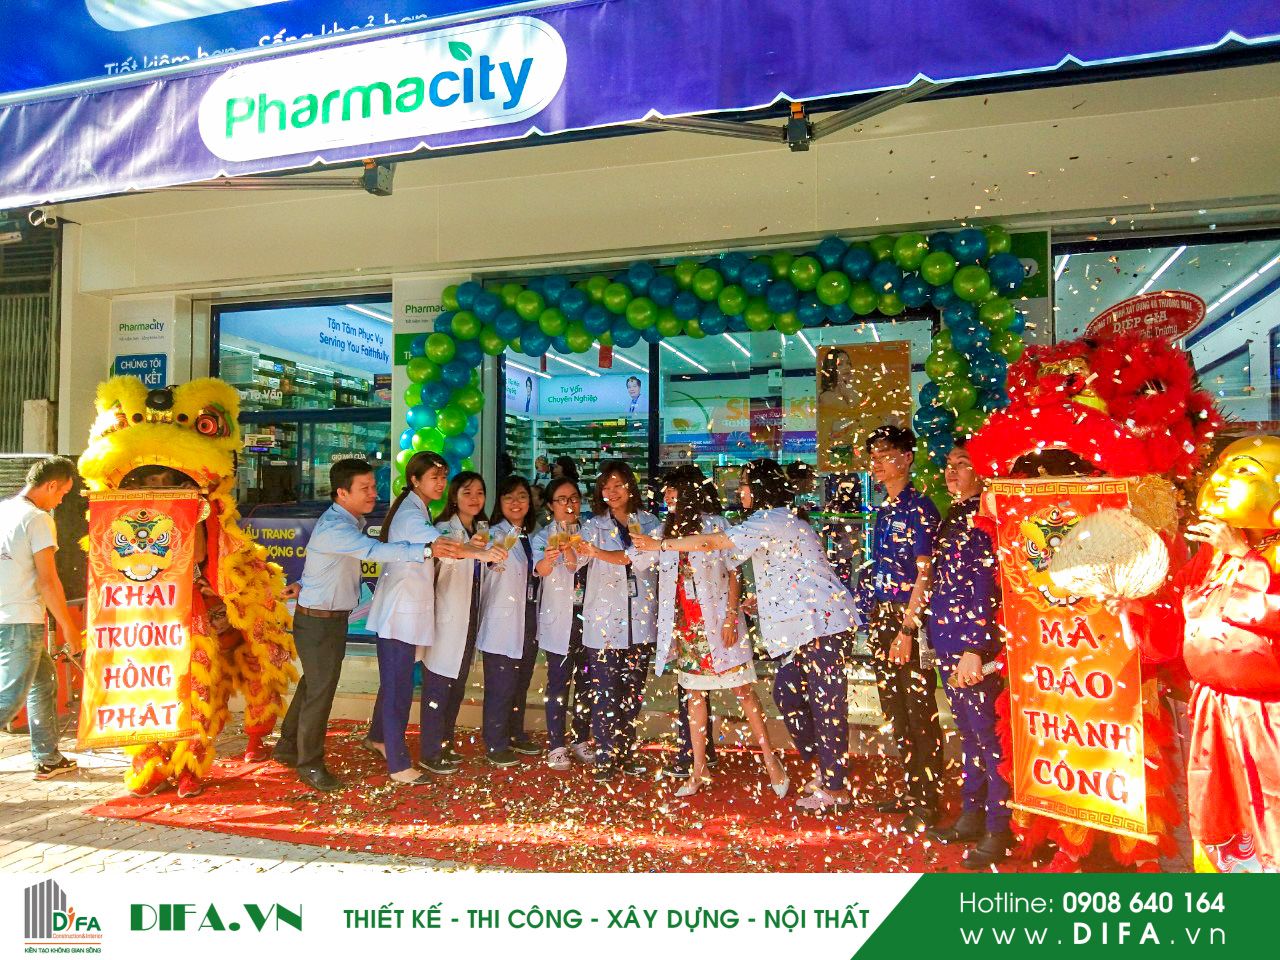 Thi Công Nhà Thuốc - Pharmacity số 302 - Trần Việt Châu | Diệp Gia